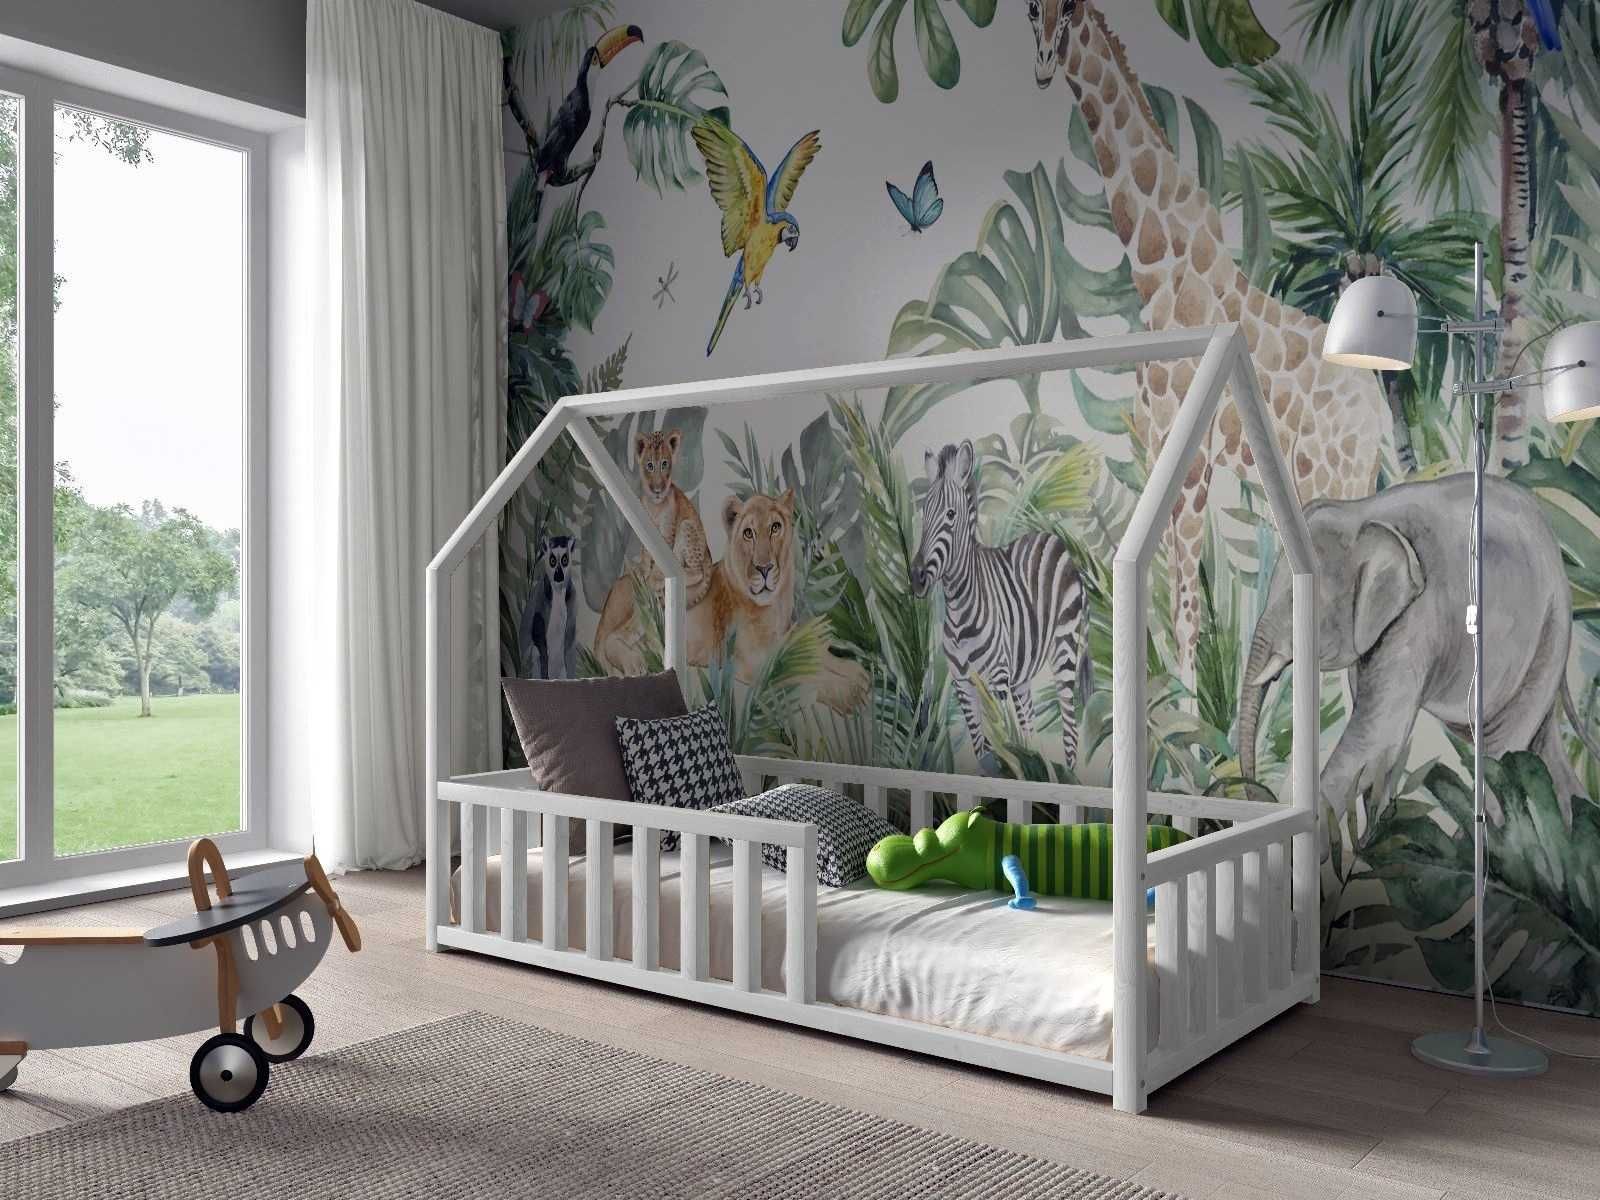 Łóżko dla dziecka domek ANTOŚ 160x80 materac gratis